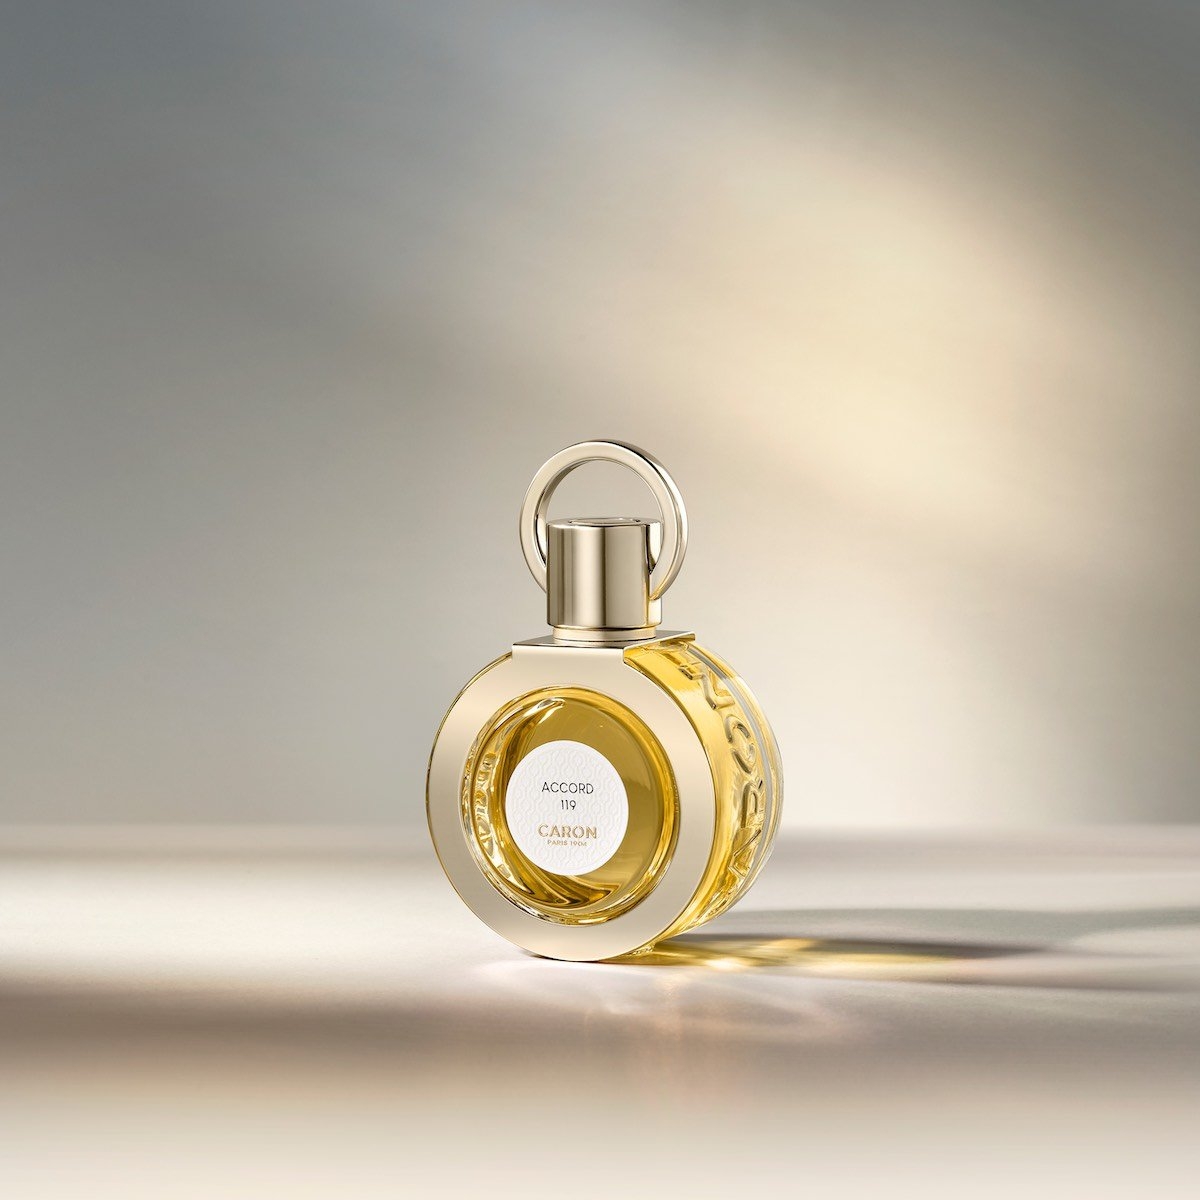 Caron - Accord 119 50 ml | Perfume Lounge